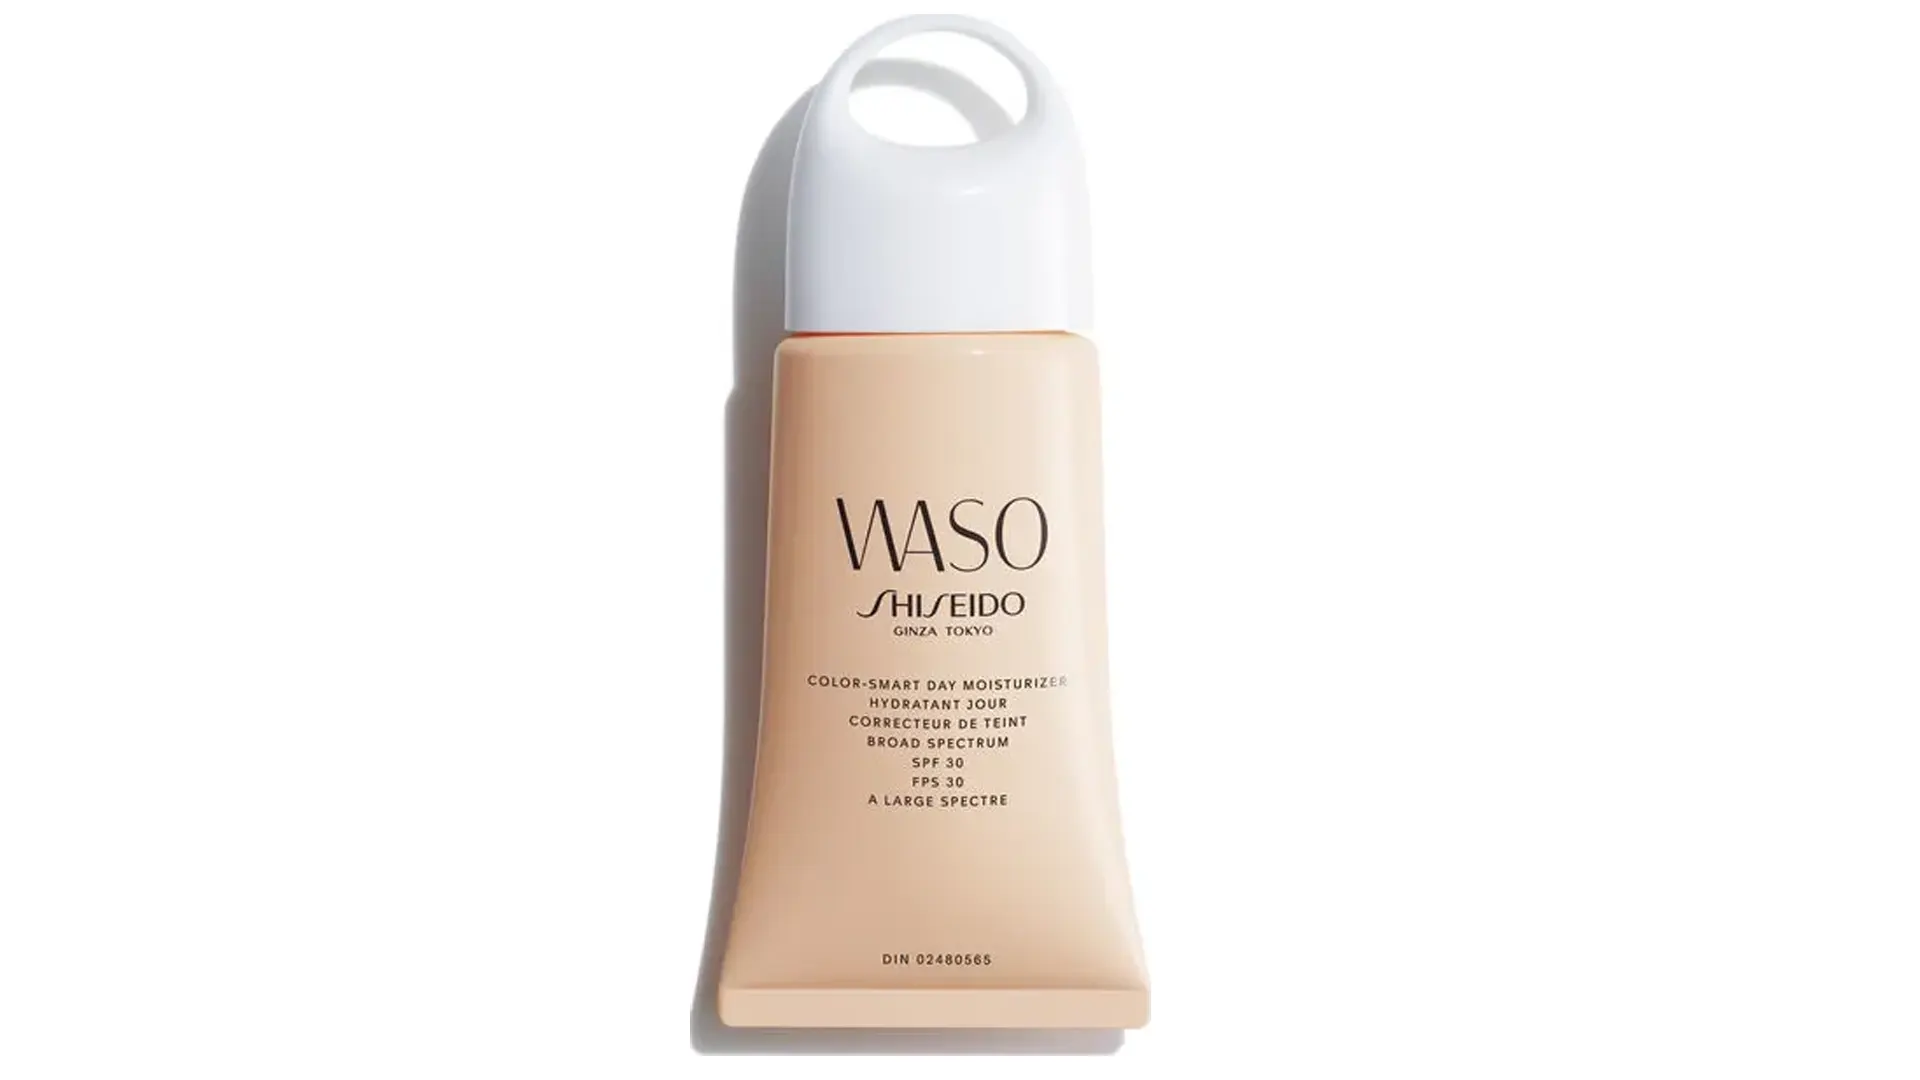 Embalagem do hidratante facial Color Smart da Shiseido Waso